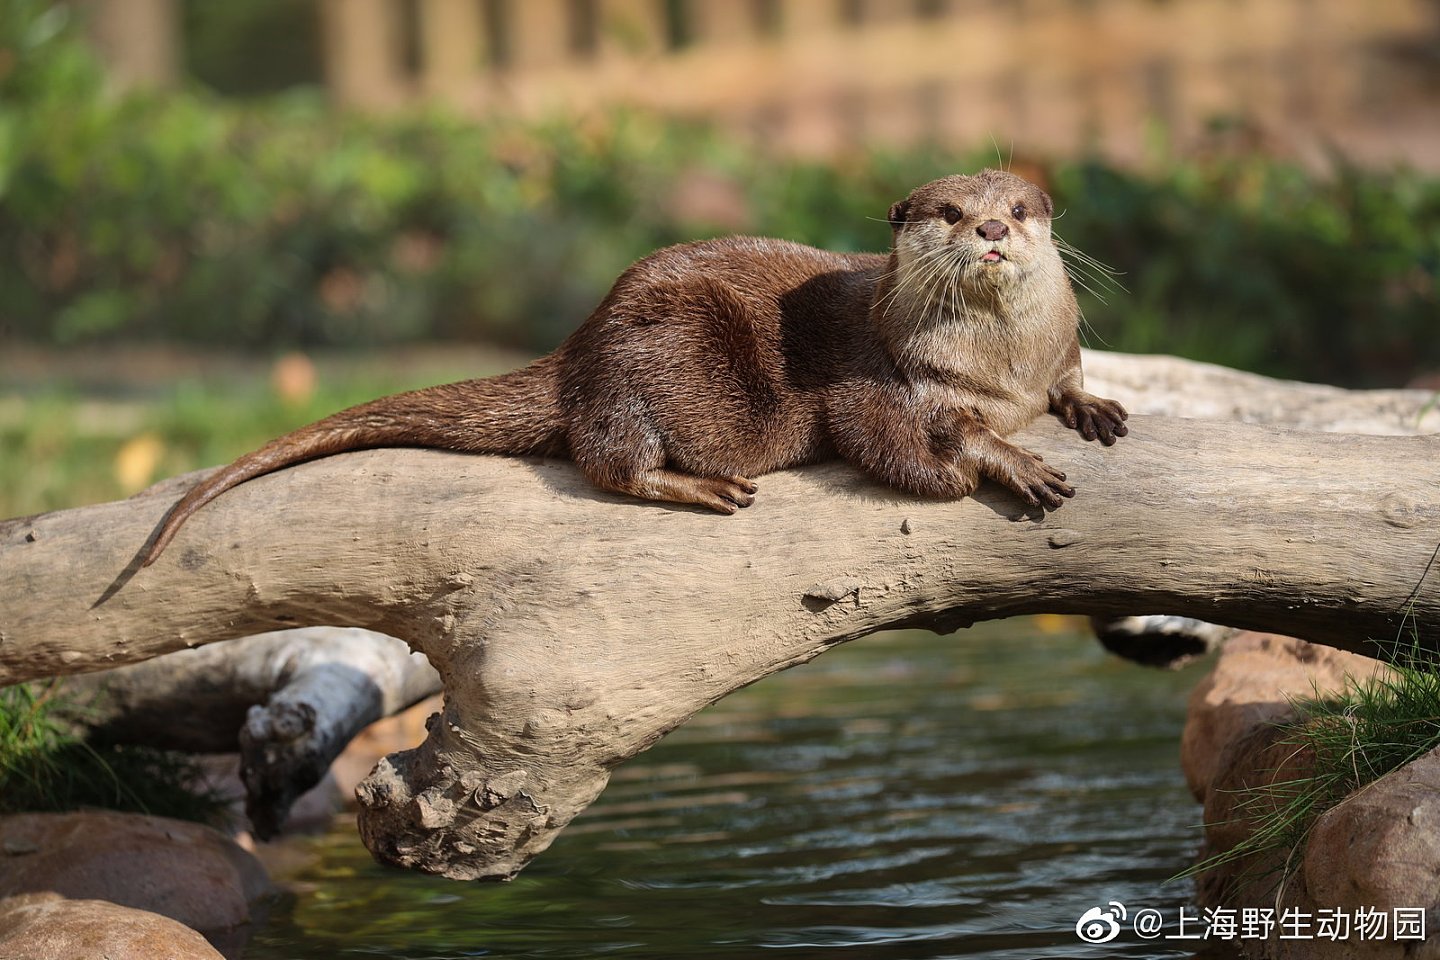 上海动物园一水獭帮游客水池捞手机，获赠锦旗：“拾金不昧暖人心”